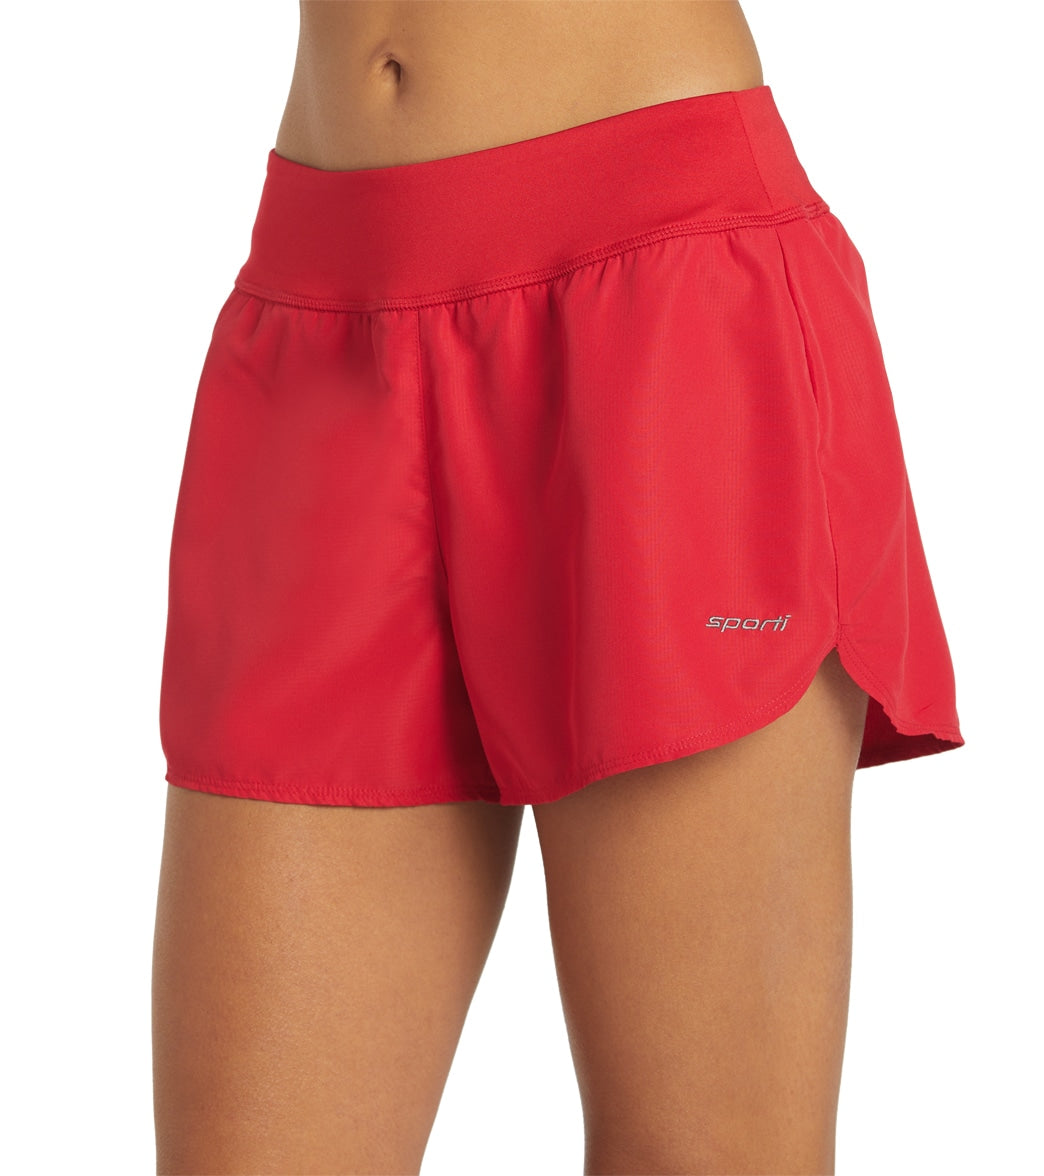 Board Shorts for Women: Incrediboardie 2.5